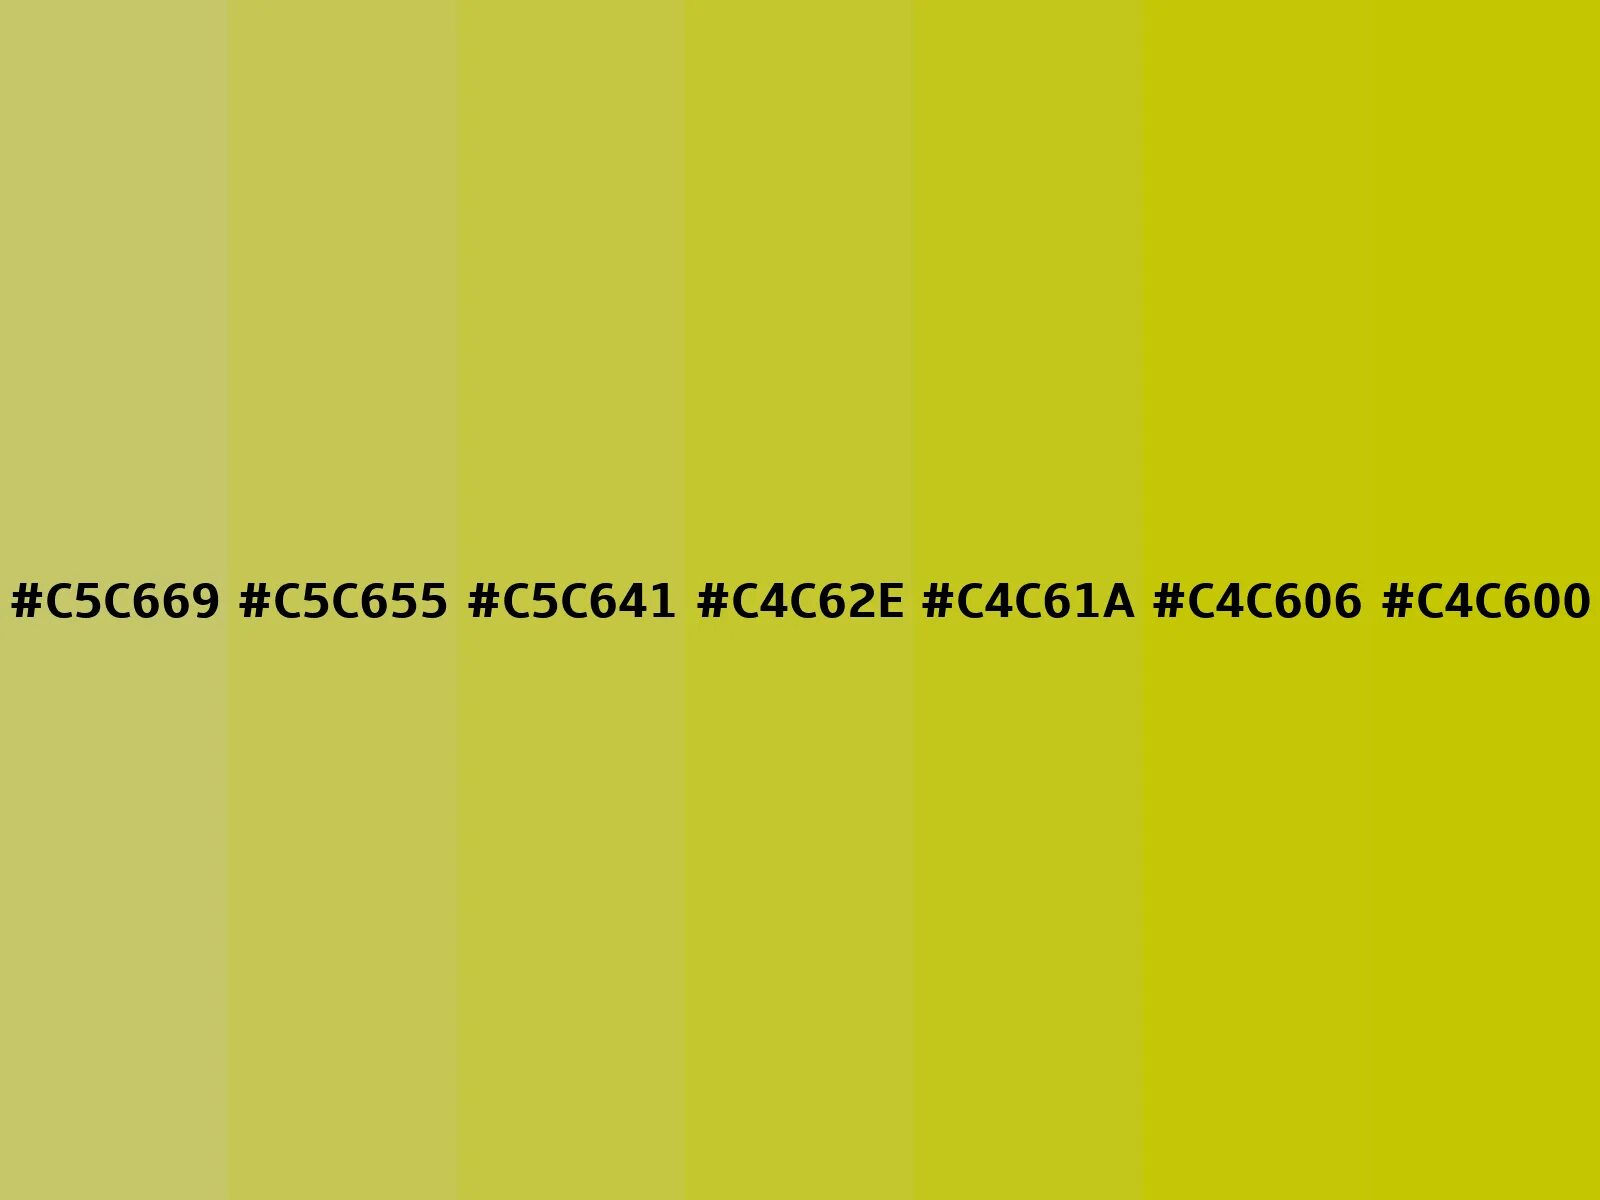 26 17 56. #1f1f1f цвет. #F)ffff'; цвет. 0.5,0.5,0.5,0.5 CMYK. Код цвета 467-46.